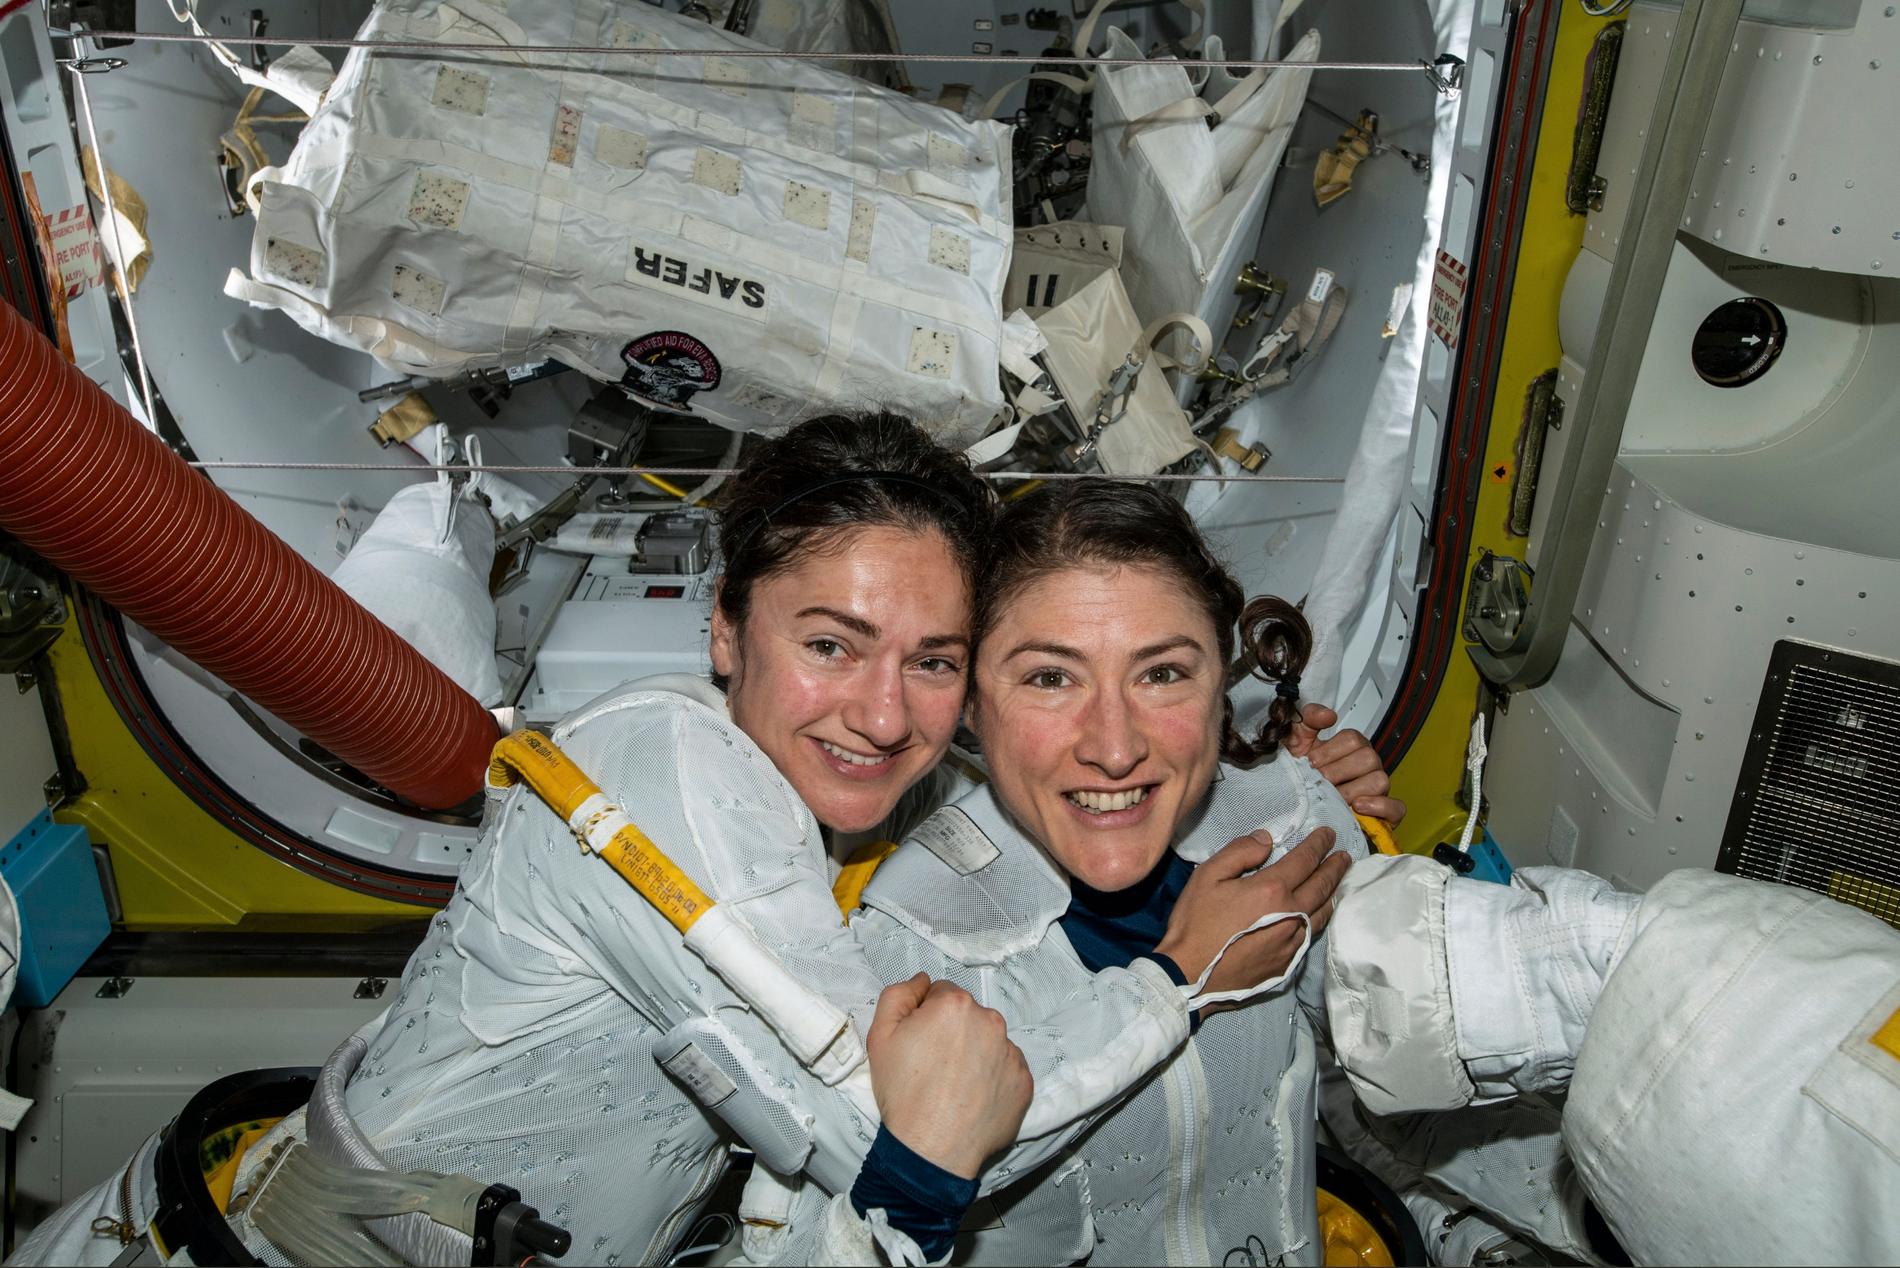 Astronauterna Jessica Meir och Christina Koch i samband med att de skrev historia då de i oktober i fjol genomförde den första helt kvinnliga rymdpromenaden.